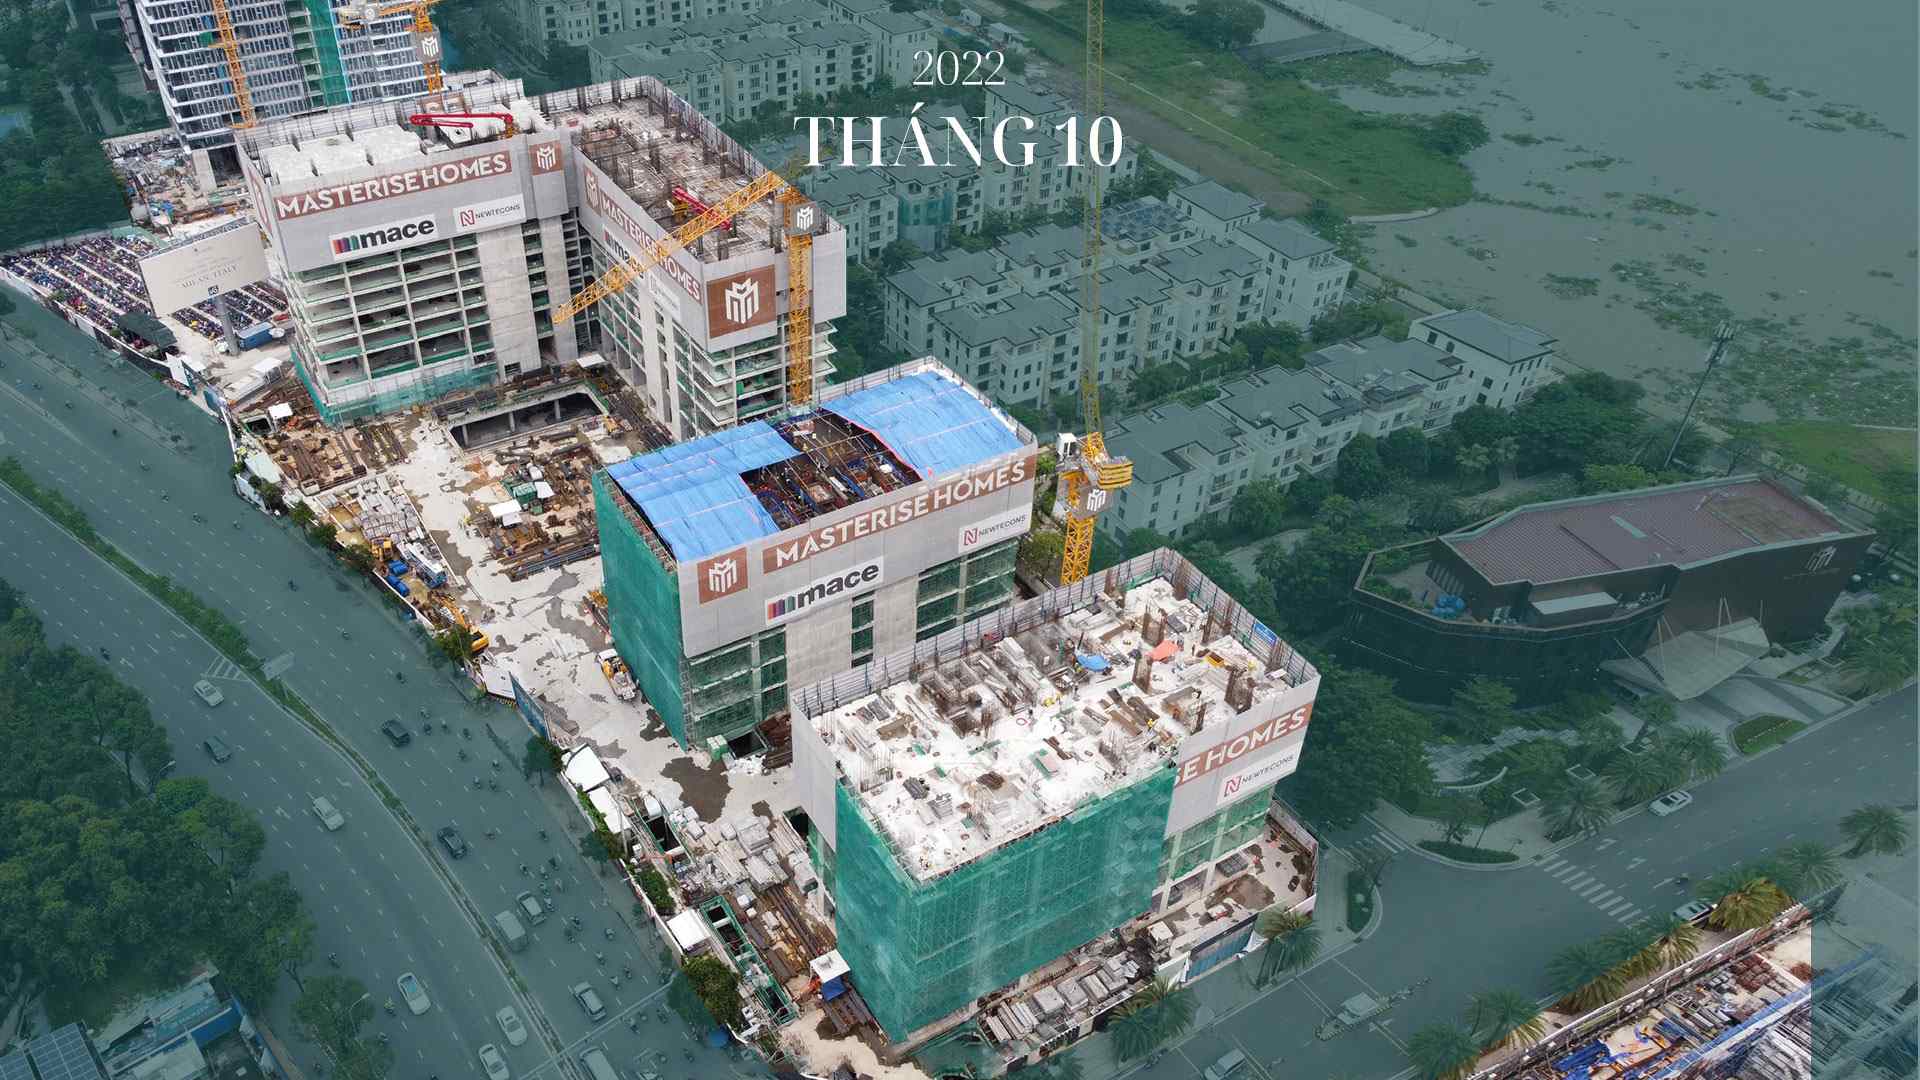 Grand Marina Saigon - Progress October 2022